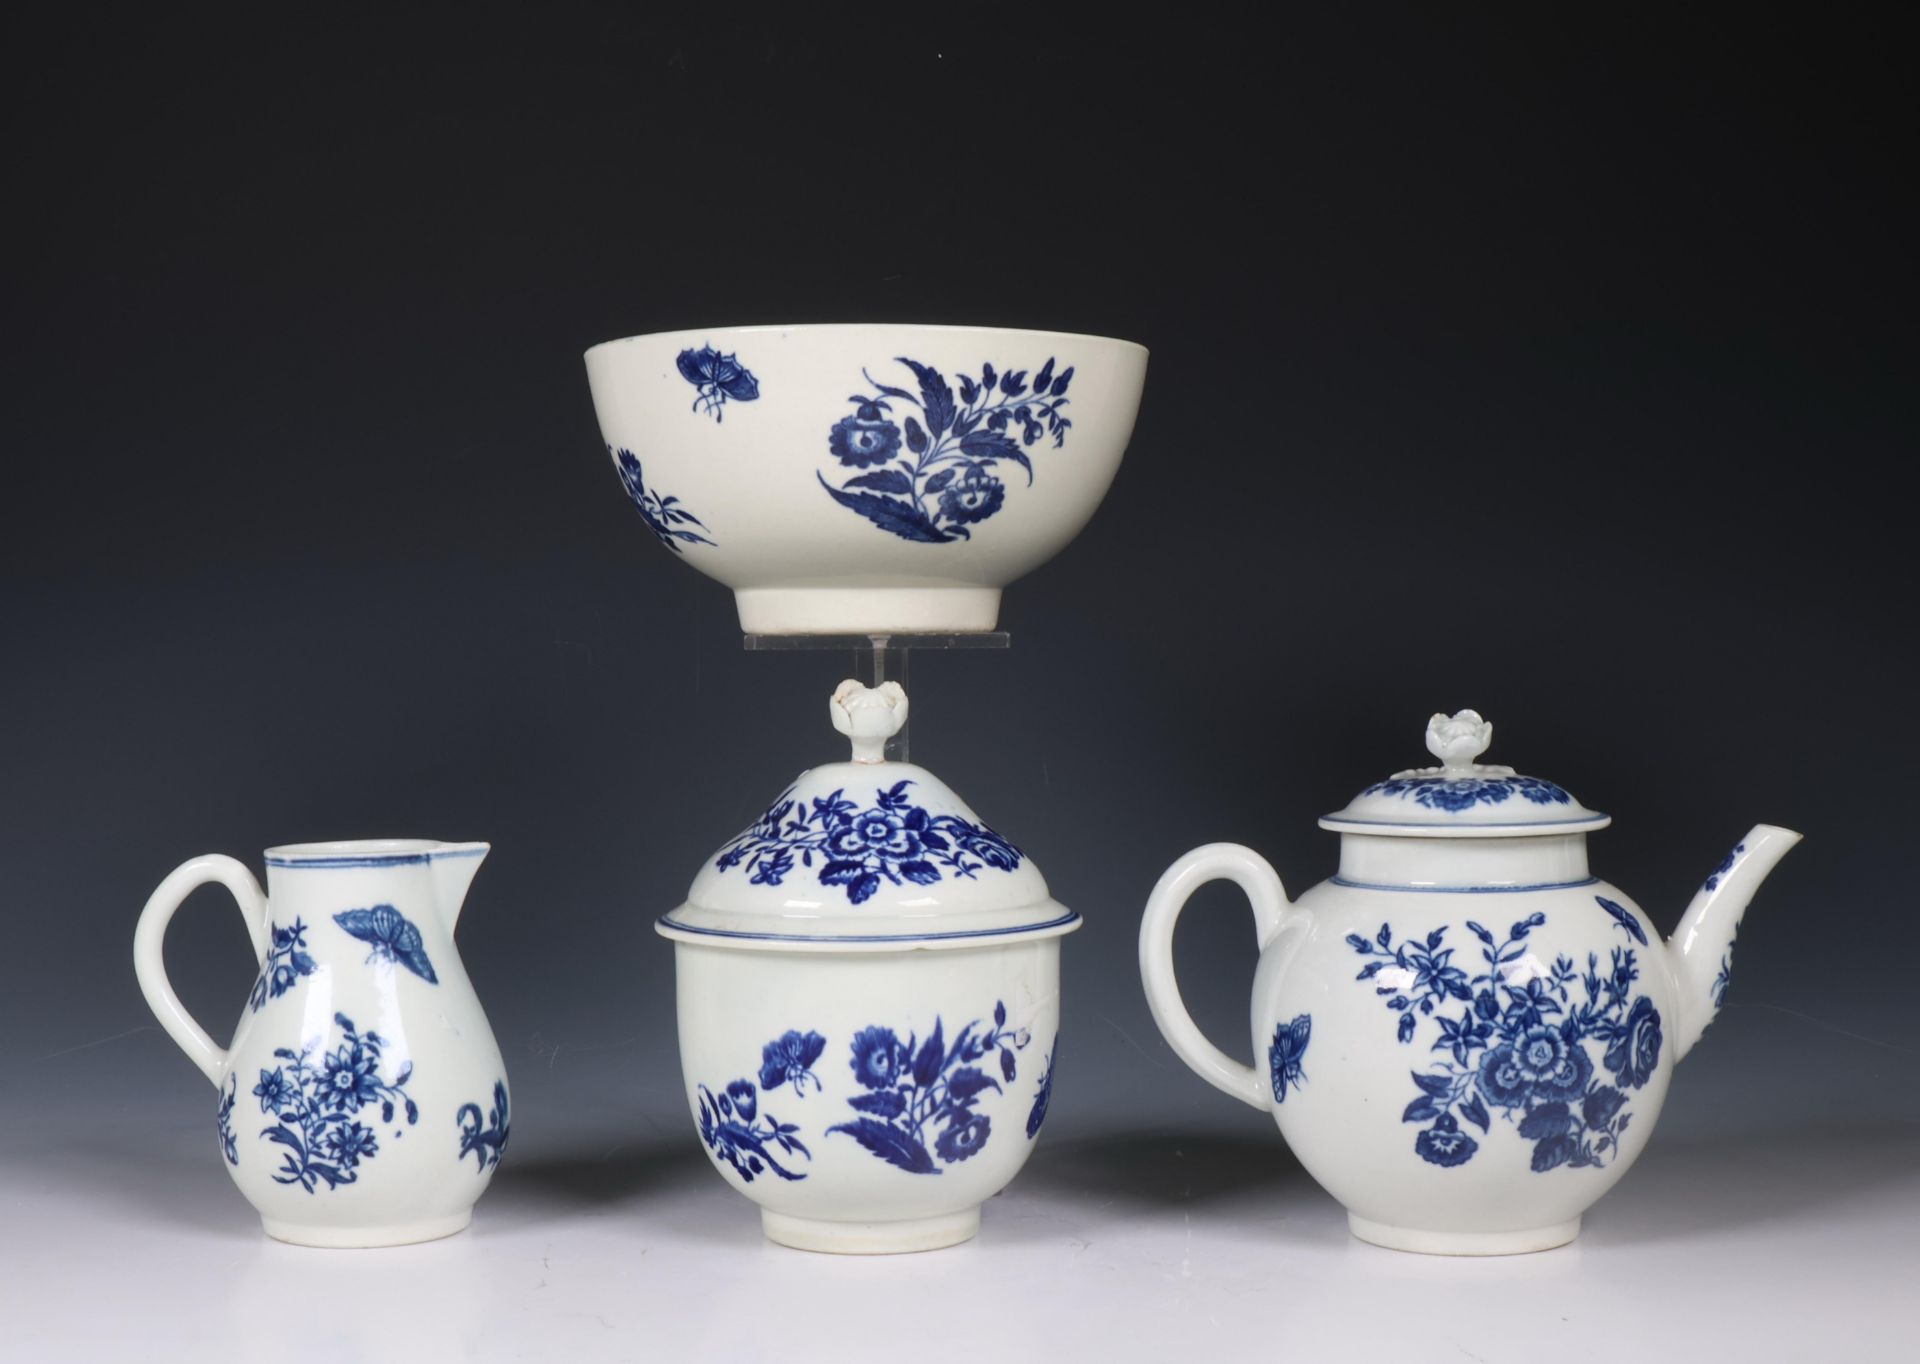 Worcester vier delig blauw wit thee servies 18e eeuw, bestaande uit theepot, melkkan, suikerpot, spo - Image 2 of 4